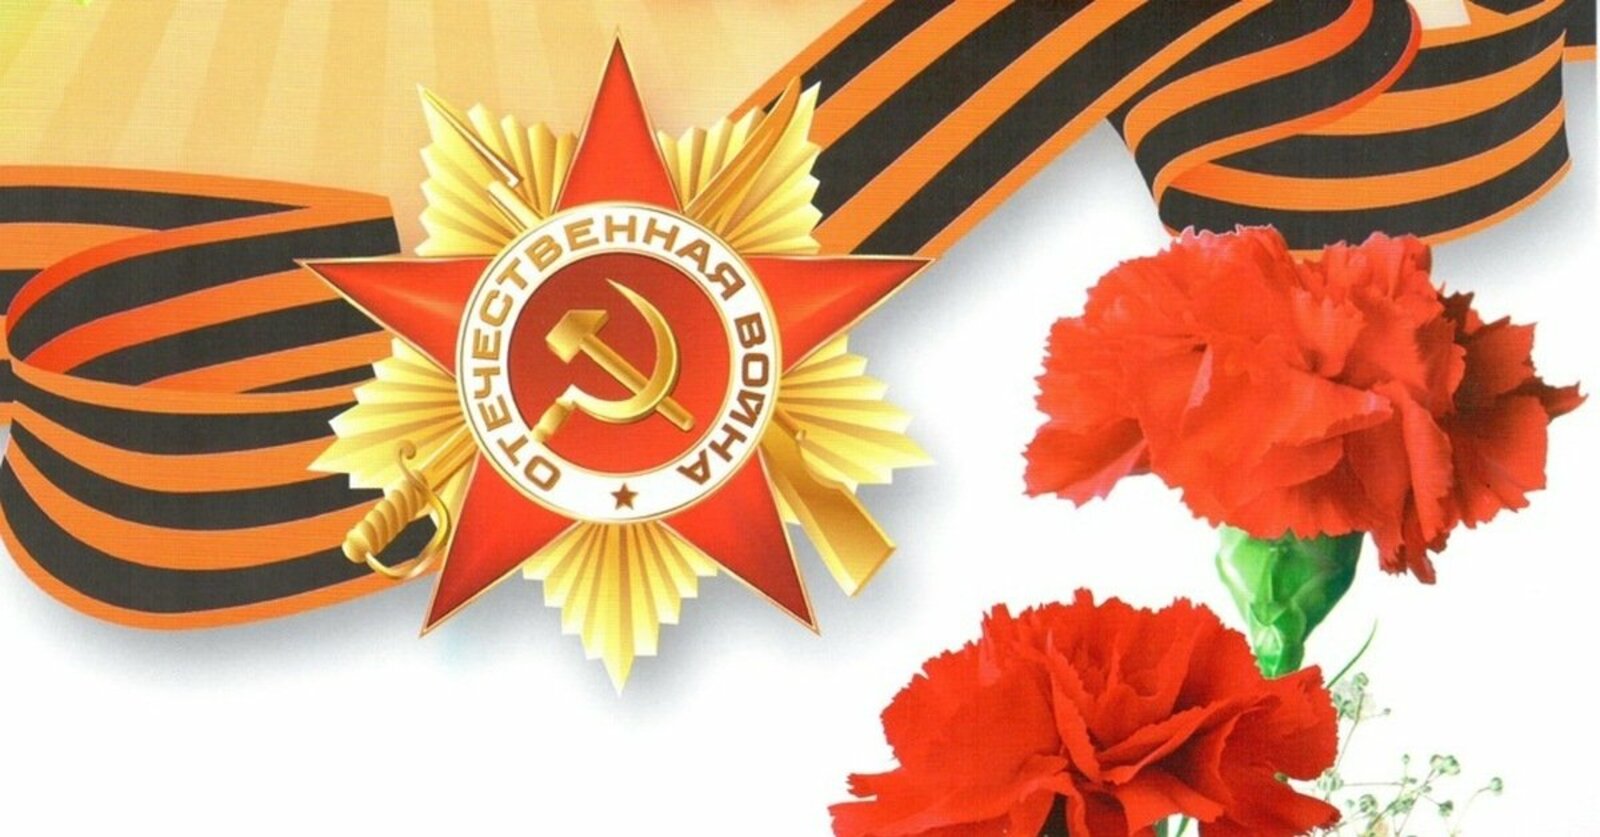 Программа мероприятий на 9 мая, посвященных  77-й годовщине Победы в Великой Отечественной войне